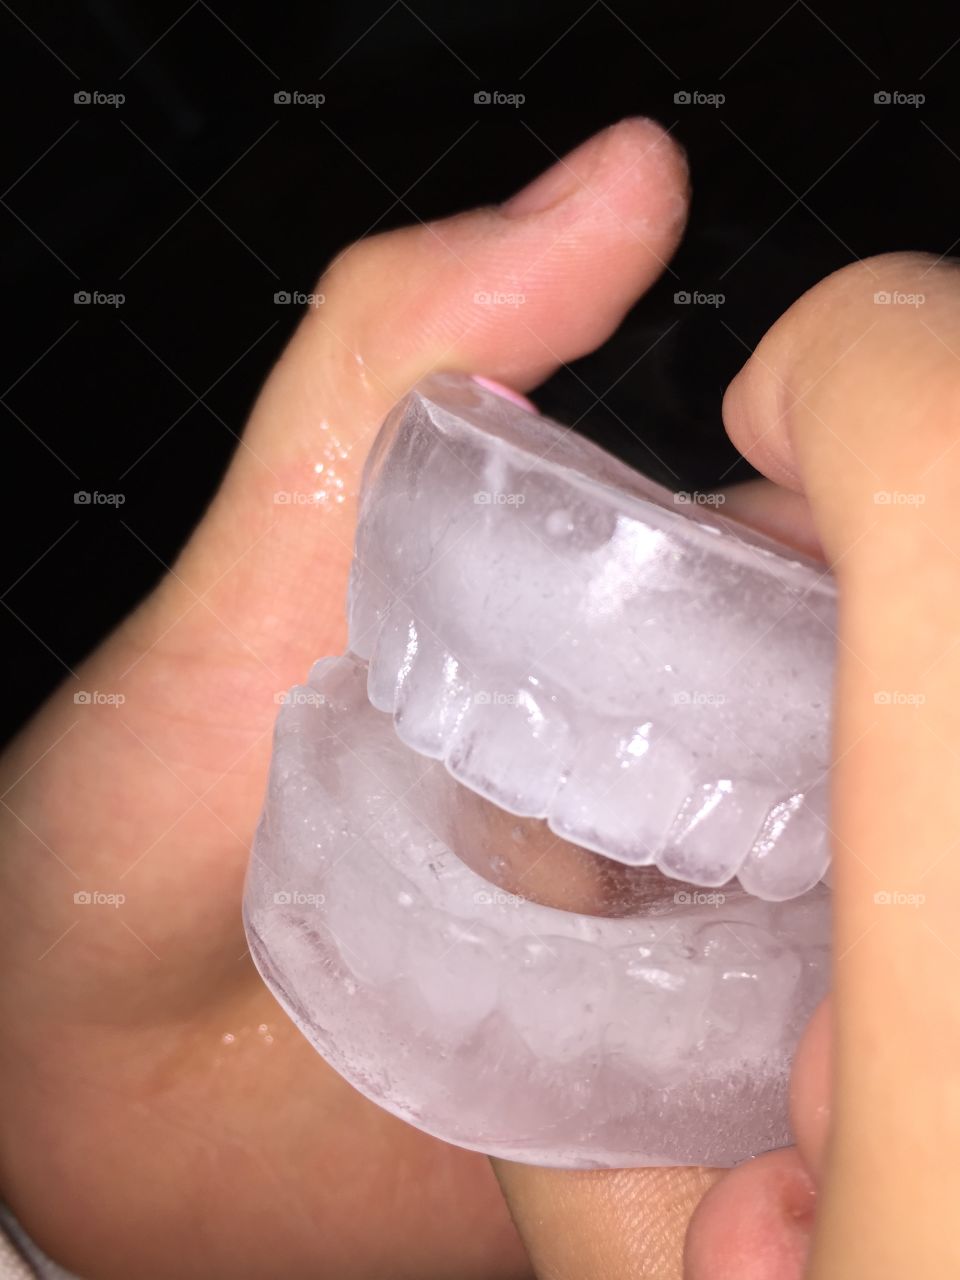 Ice teeth image. Ice teeth image